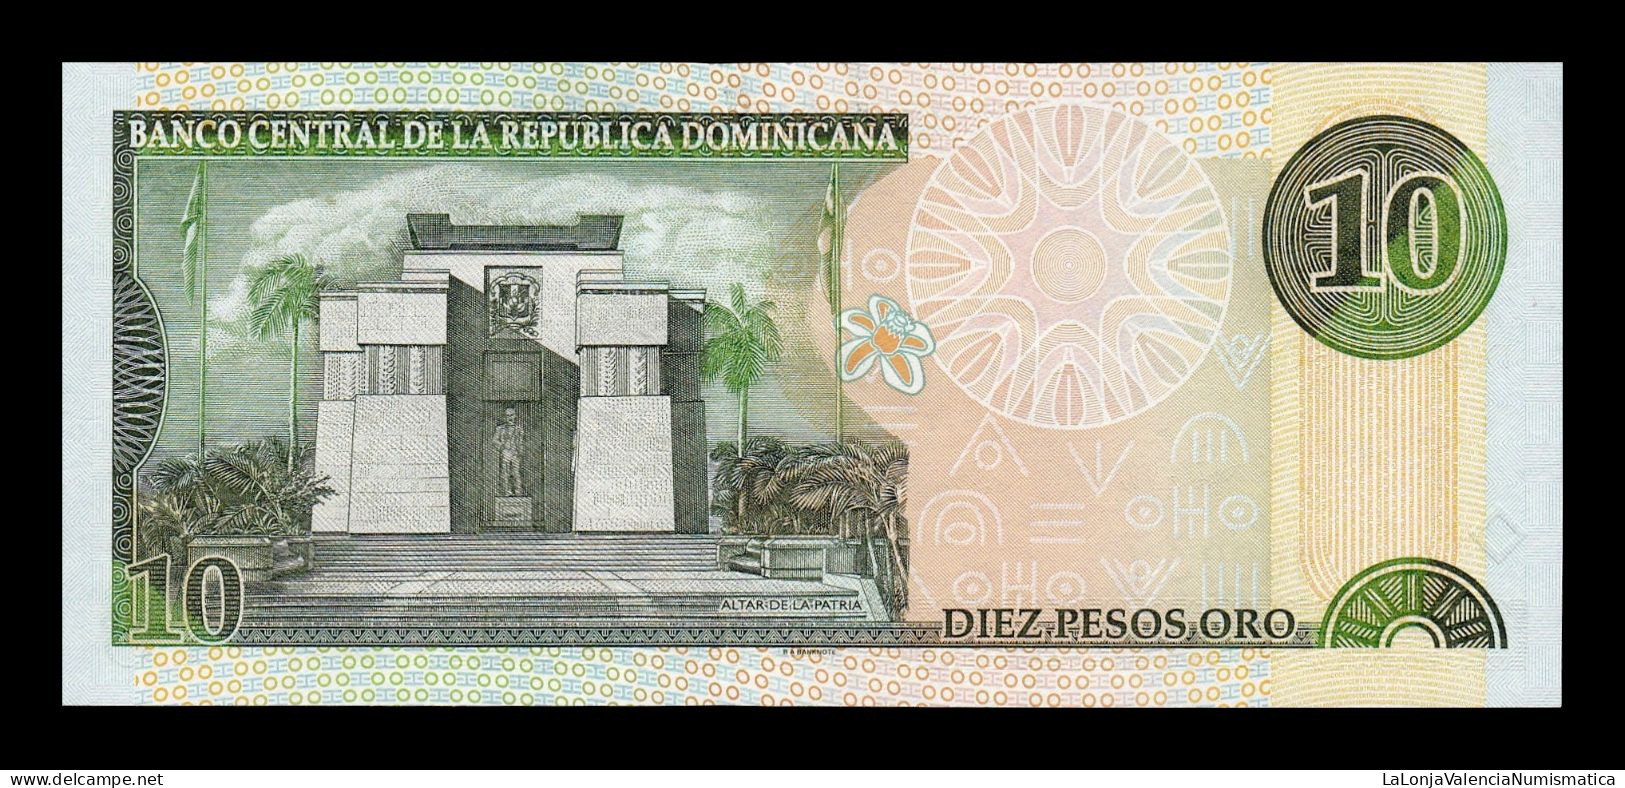 República Dominicana 10 Pesos Oro 2000 Pick 159 Low Serial 38 Sc Unc - Dominicaine